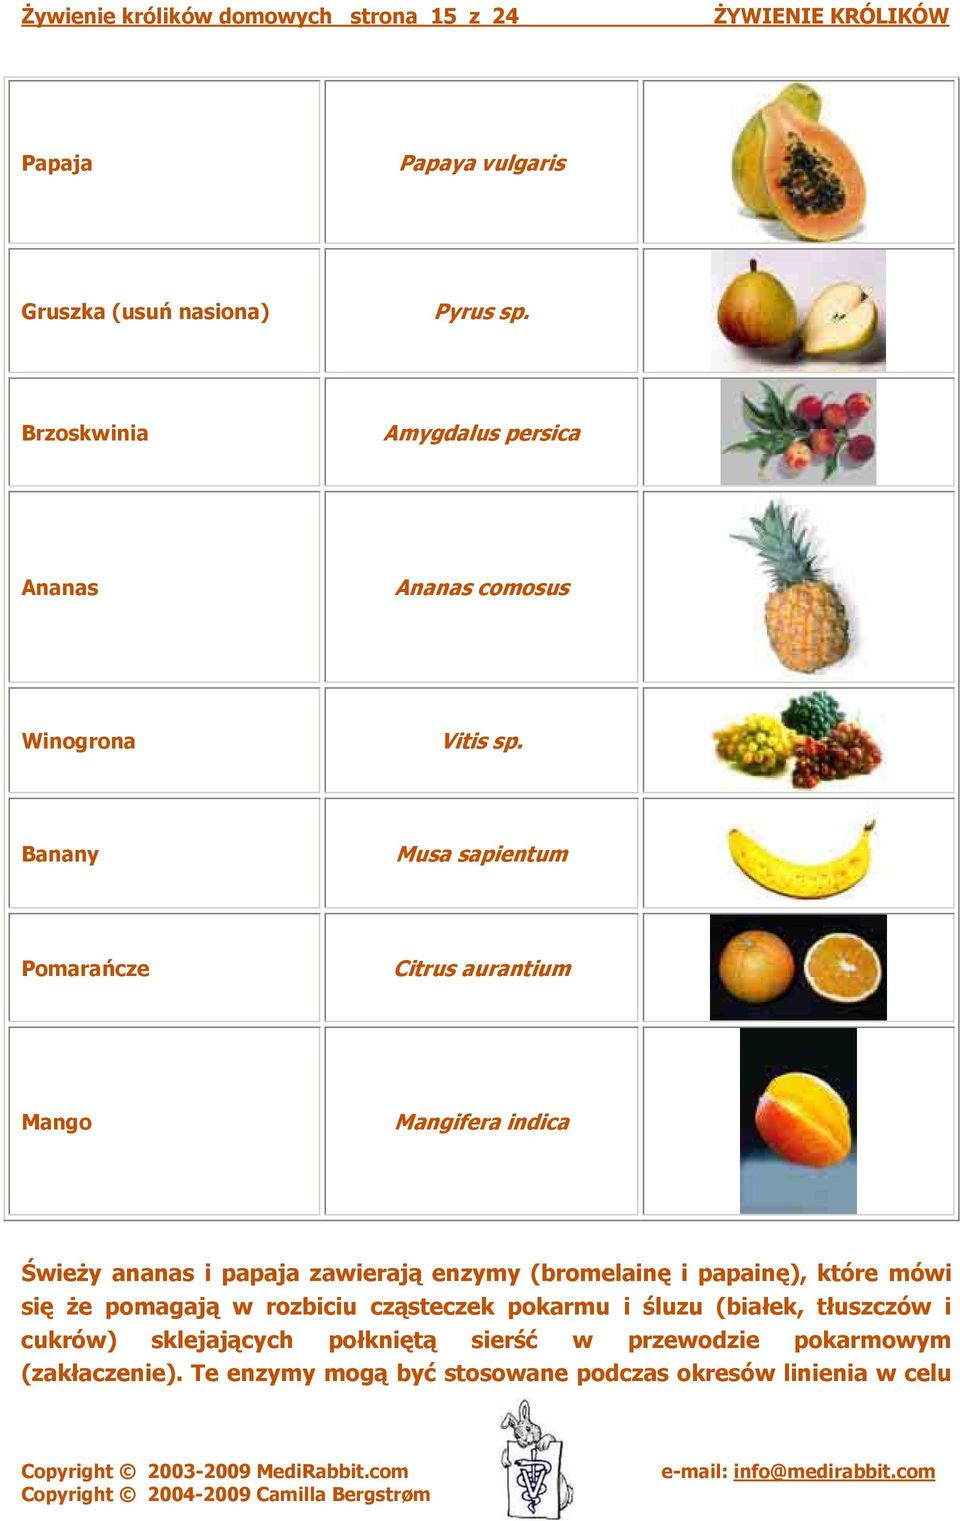 Banany Musa sapientum Pomarańcze Citrus aurantium Mango Mangifera indica Świeży ananas i papaja zawierają enzymy (bromelainę i